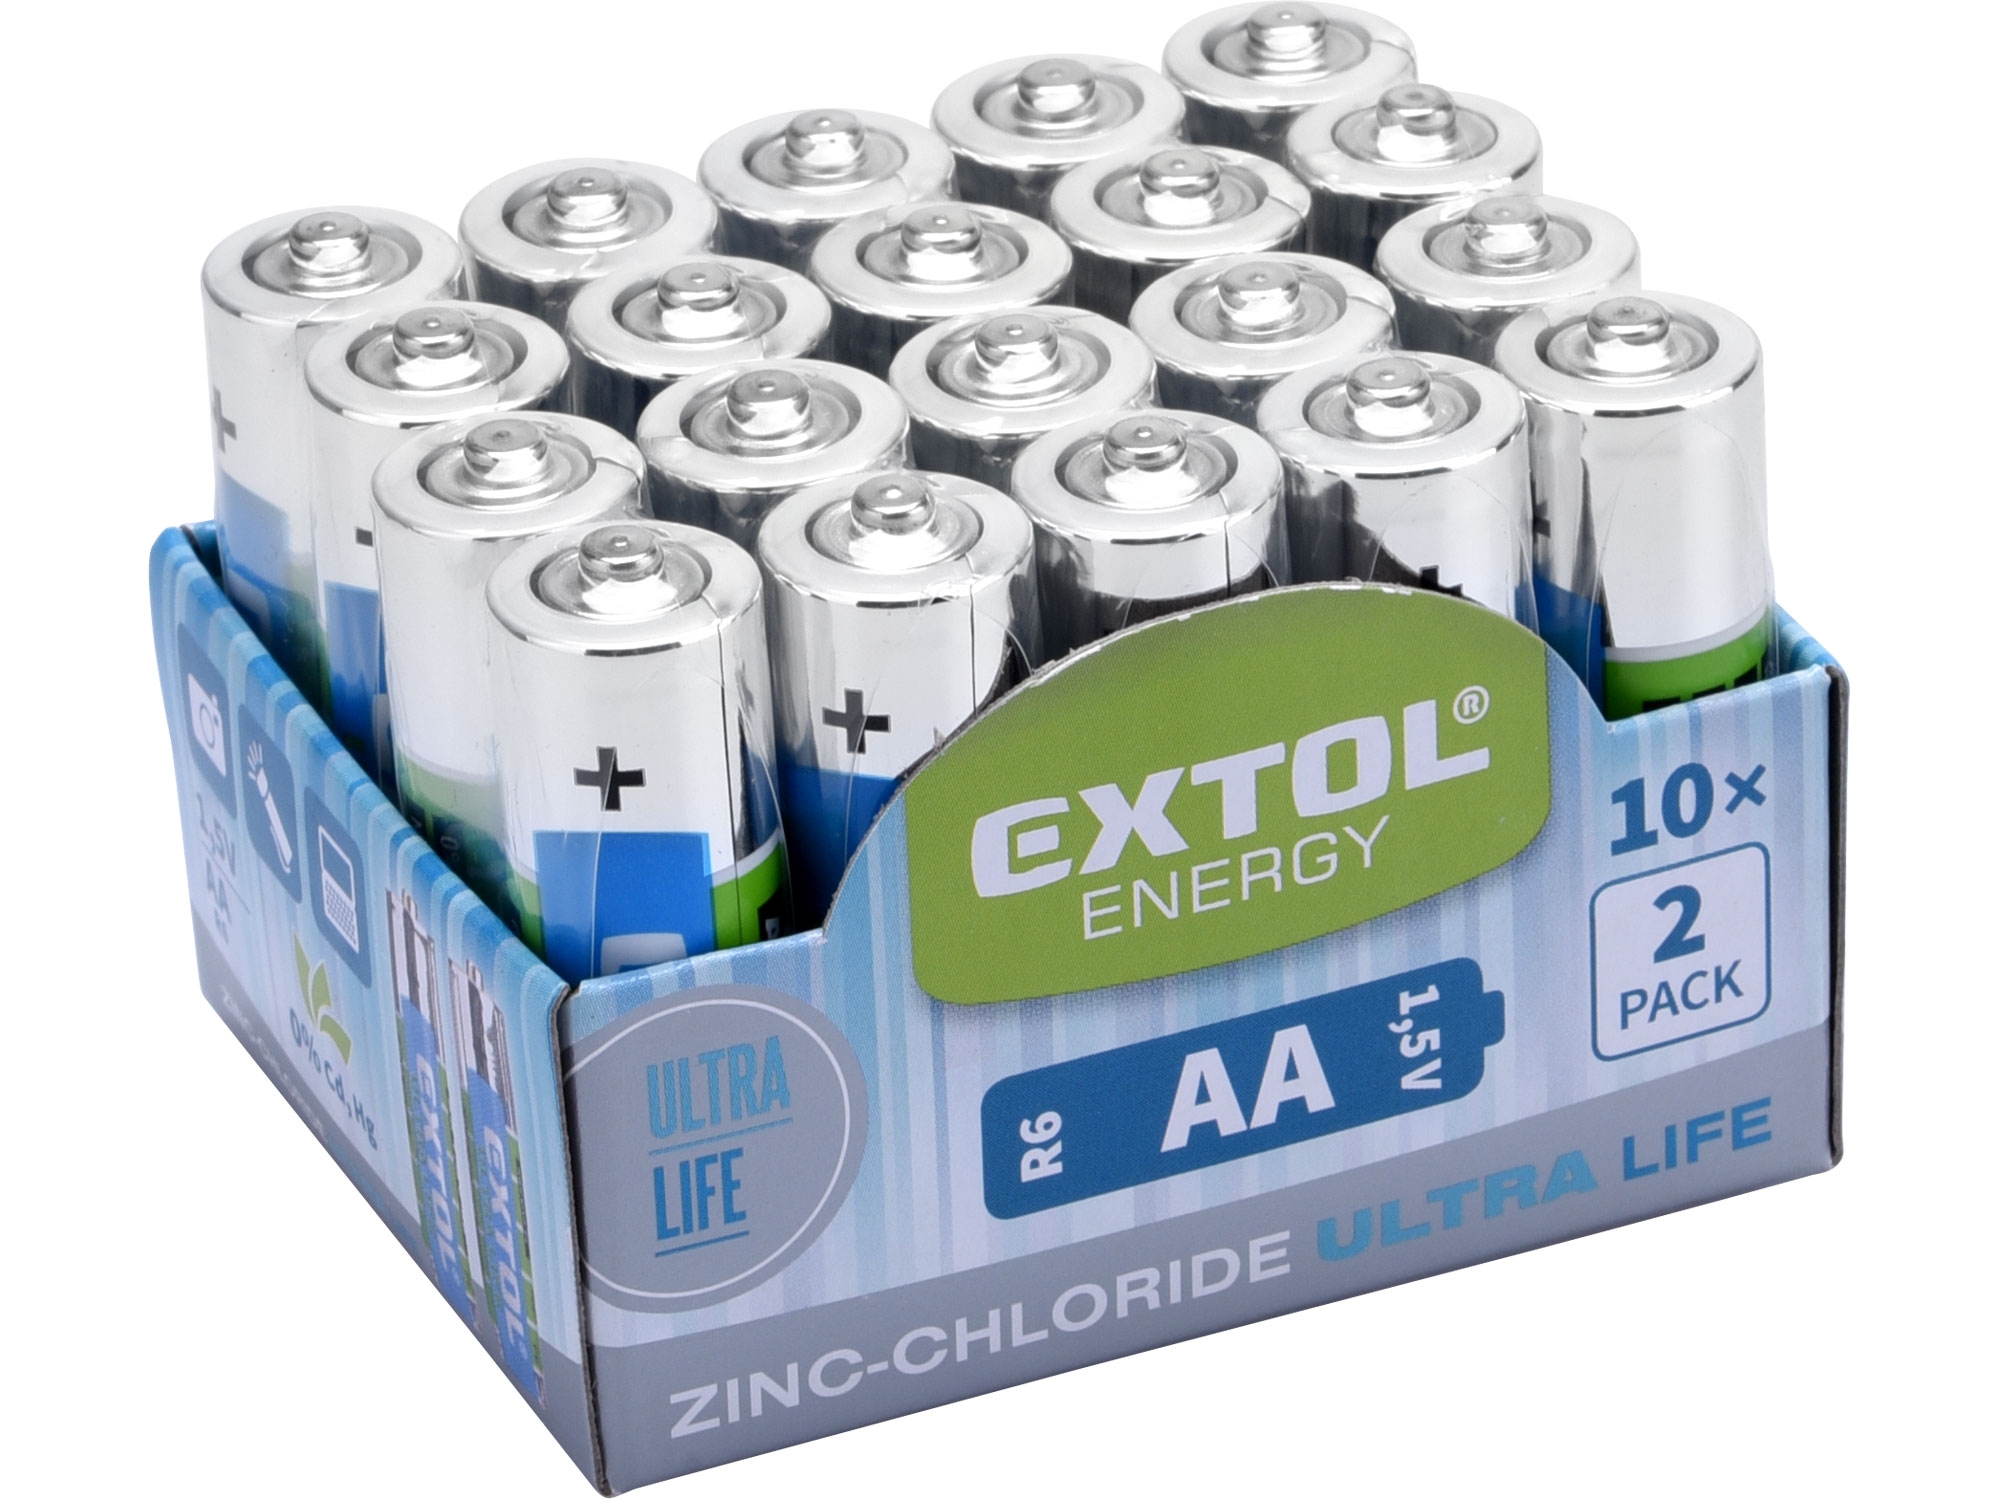 Baterie zink-chloridové, 20ks, 1,5V AA (R6)